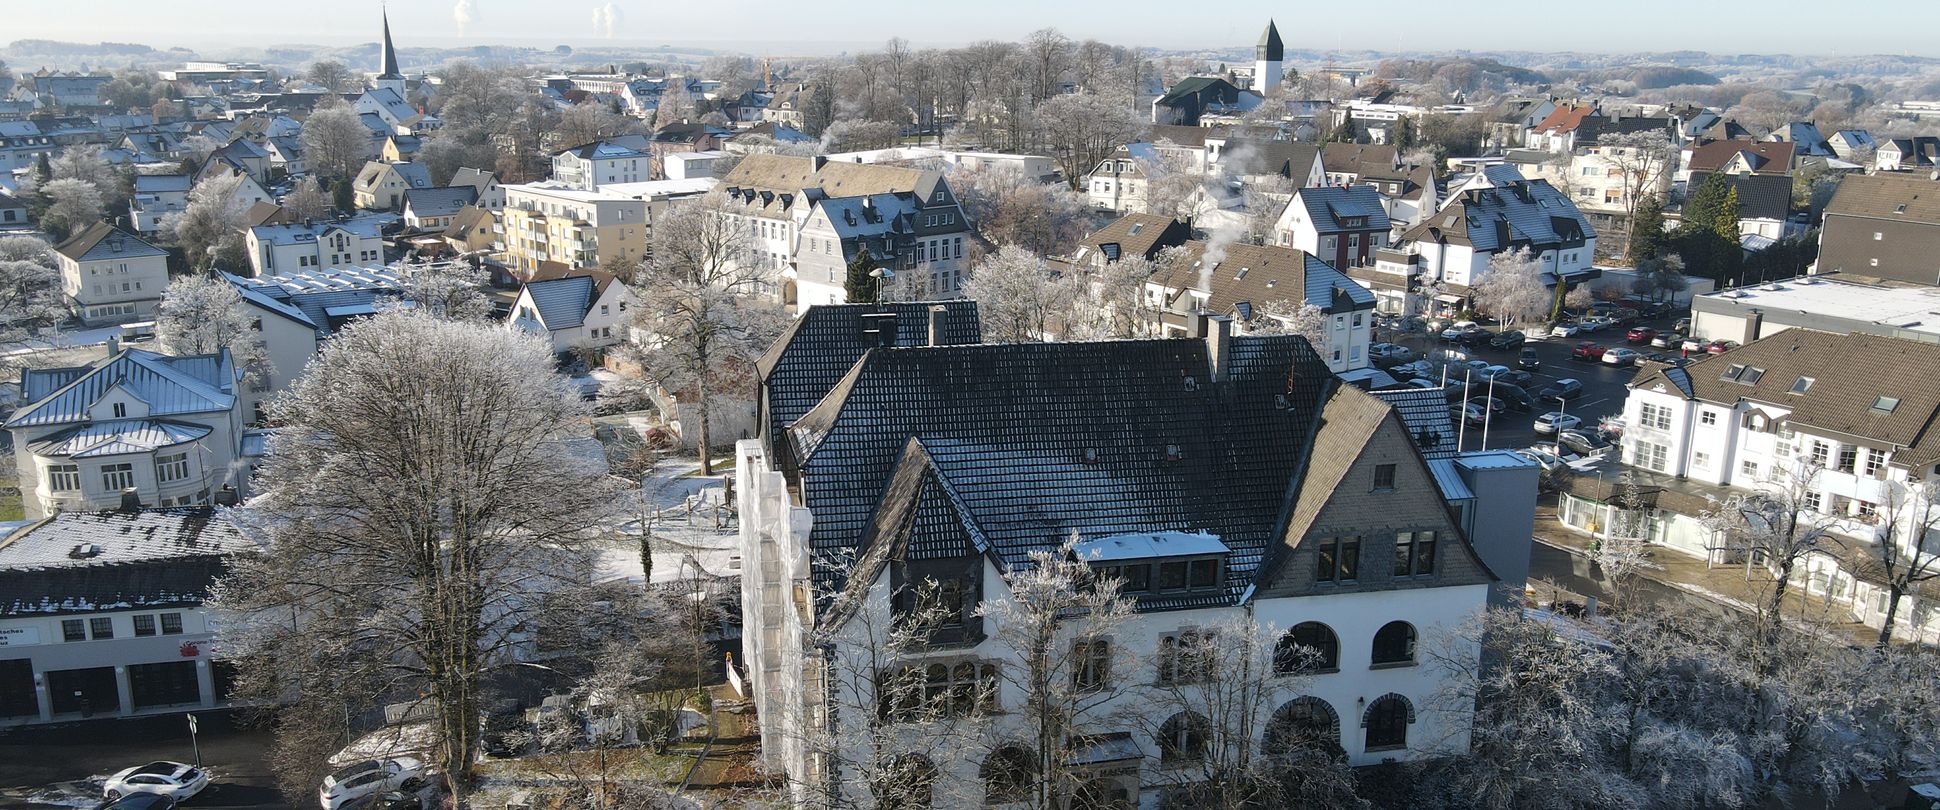 Luftbild vom Halveraner Rathaus